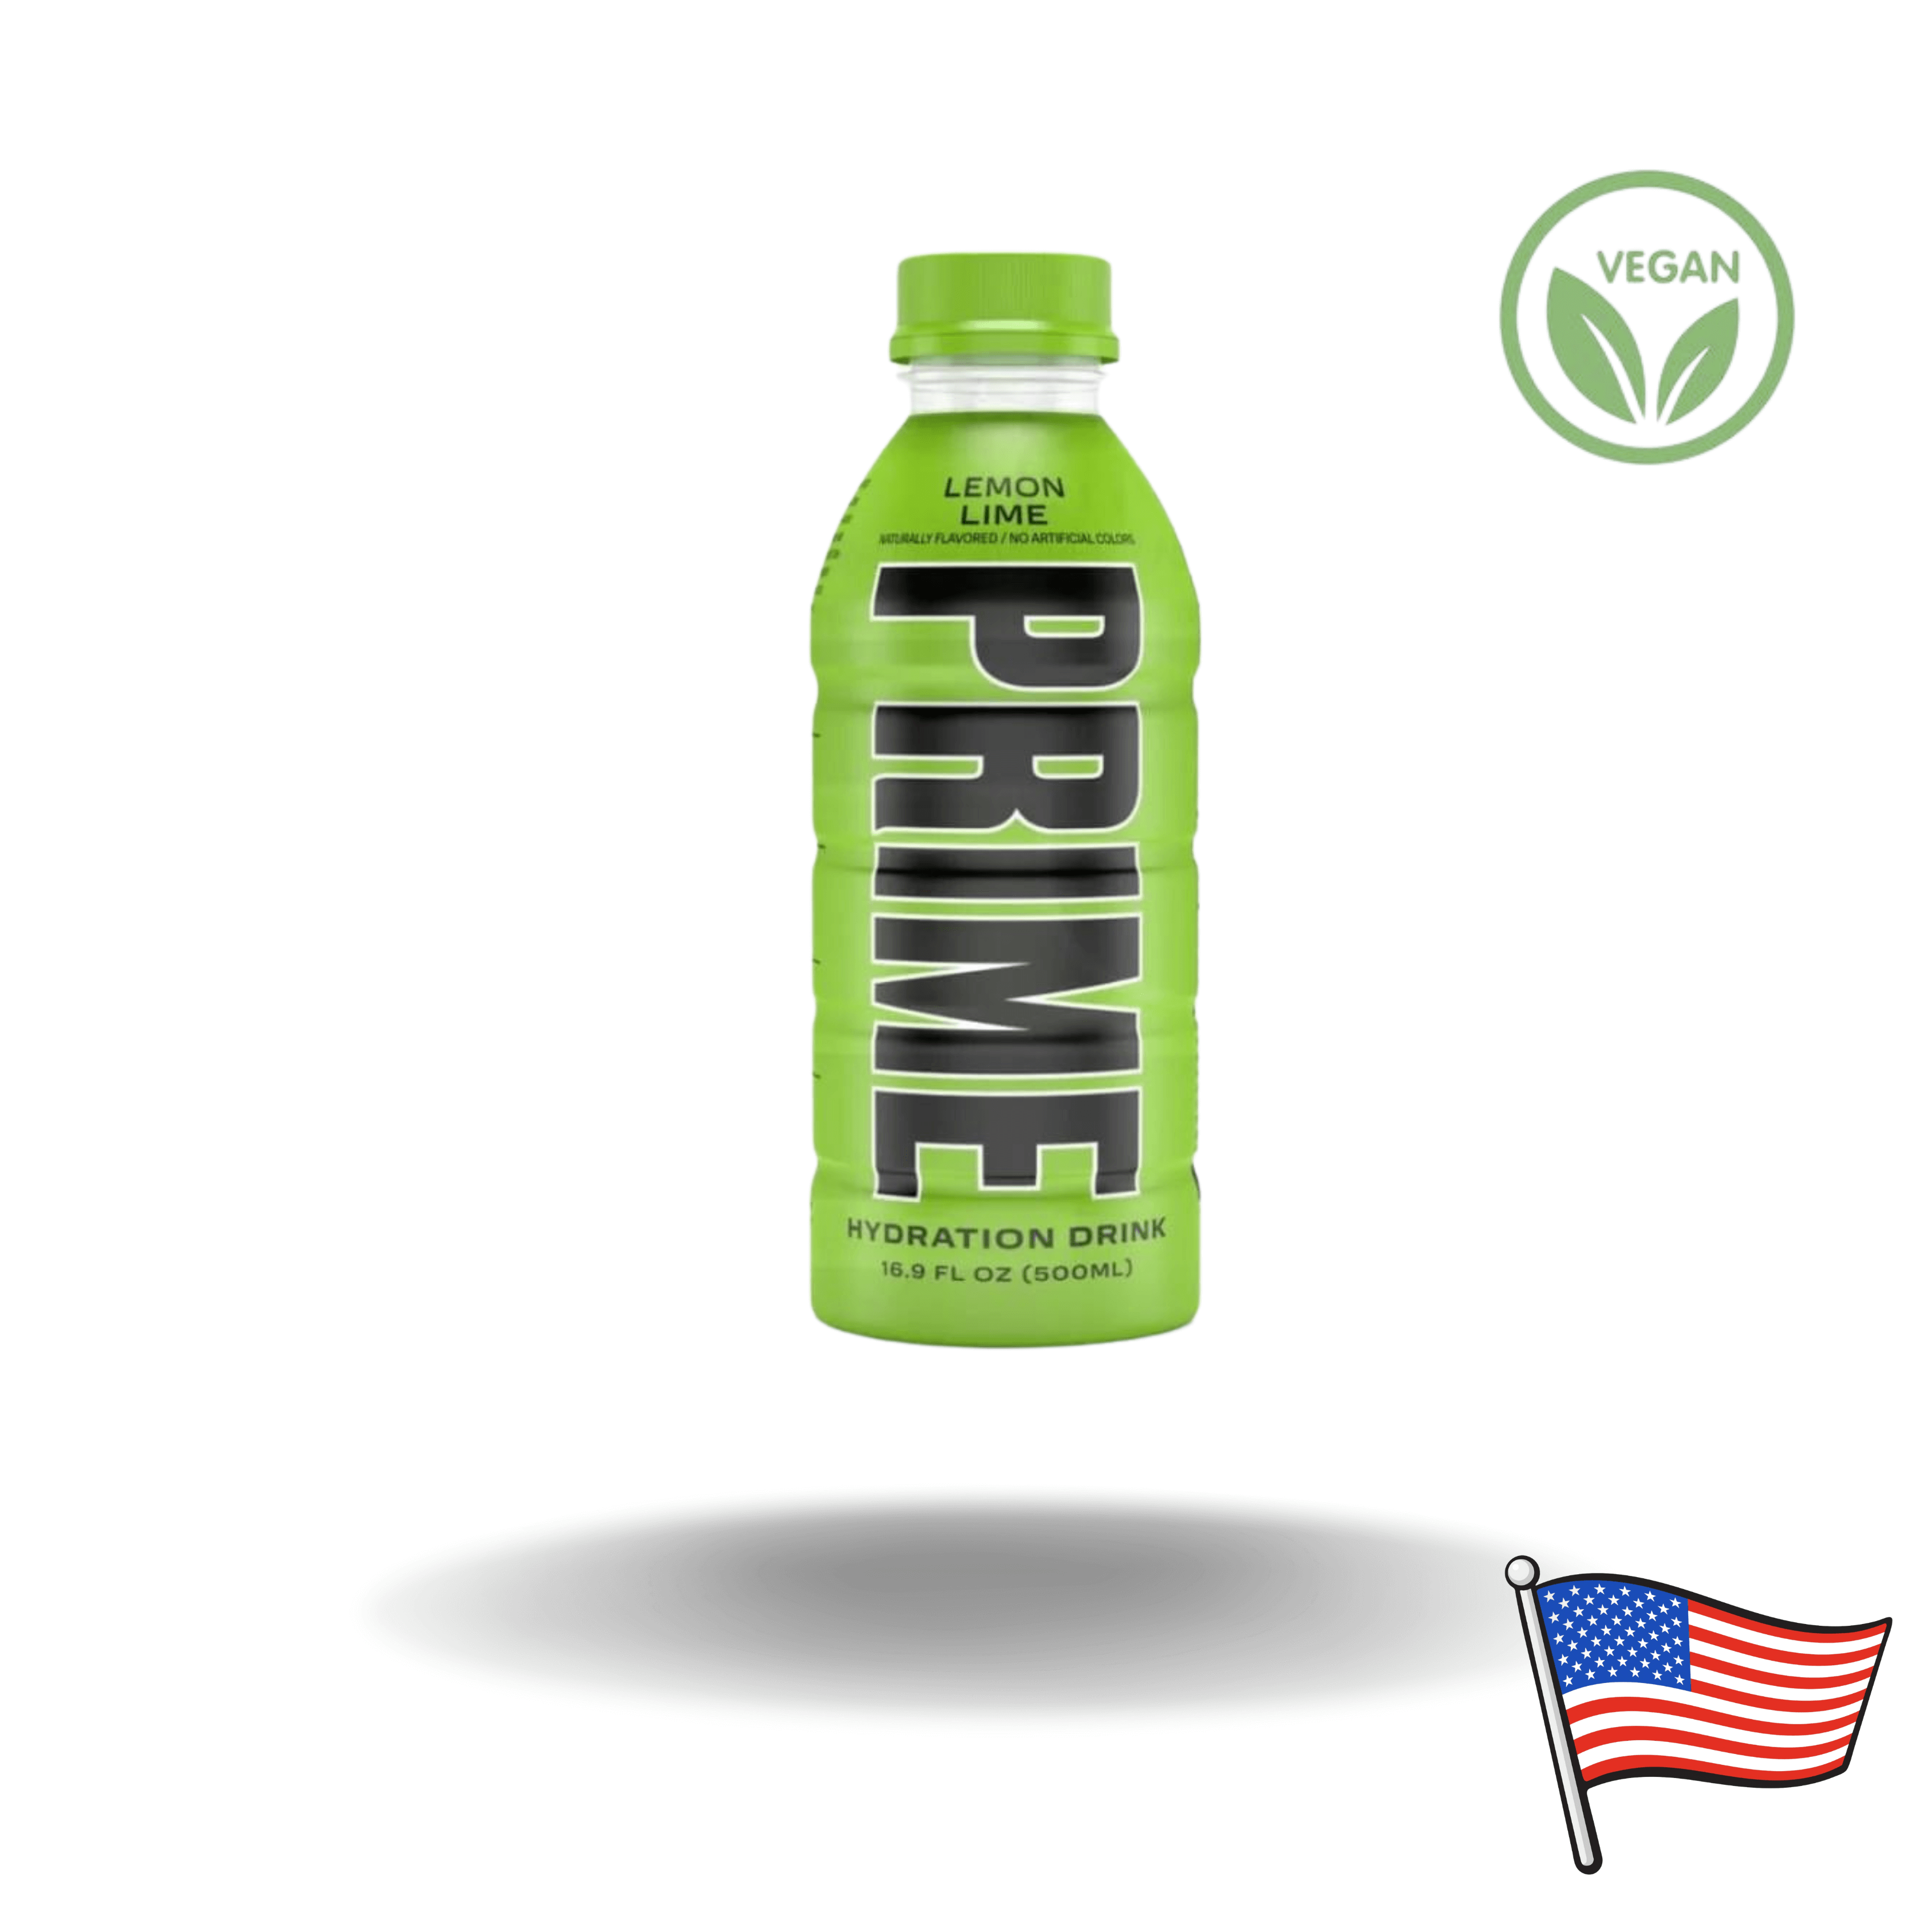 Die belebende Erfrischung direkt aus den USA! PRIME Lemon Lime ist ein delikater Drink, der auf exotischem Kokoswasser basiert und mit der unwiderstehlich frischen Geschmackskombination von Zitrone und Limette punktet.